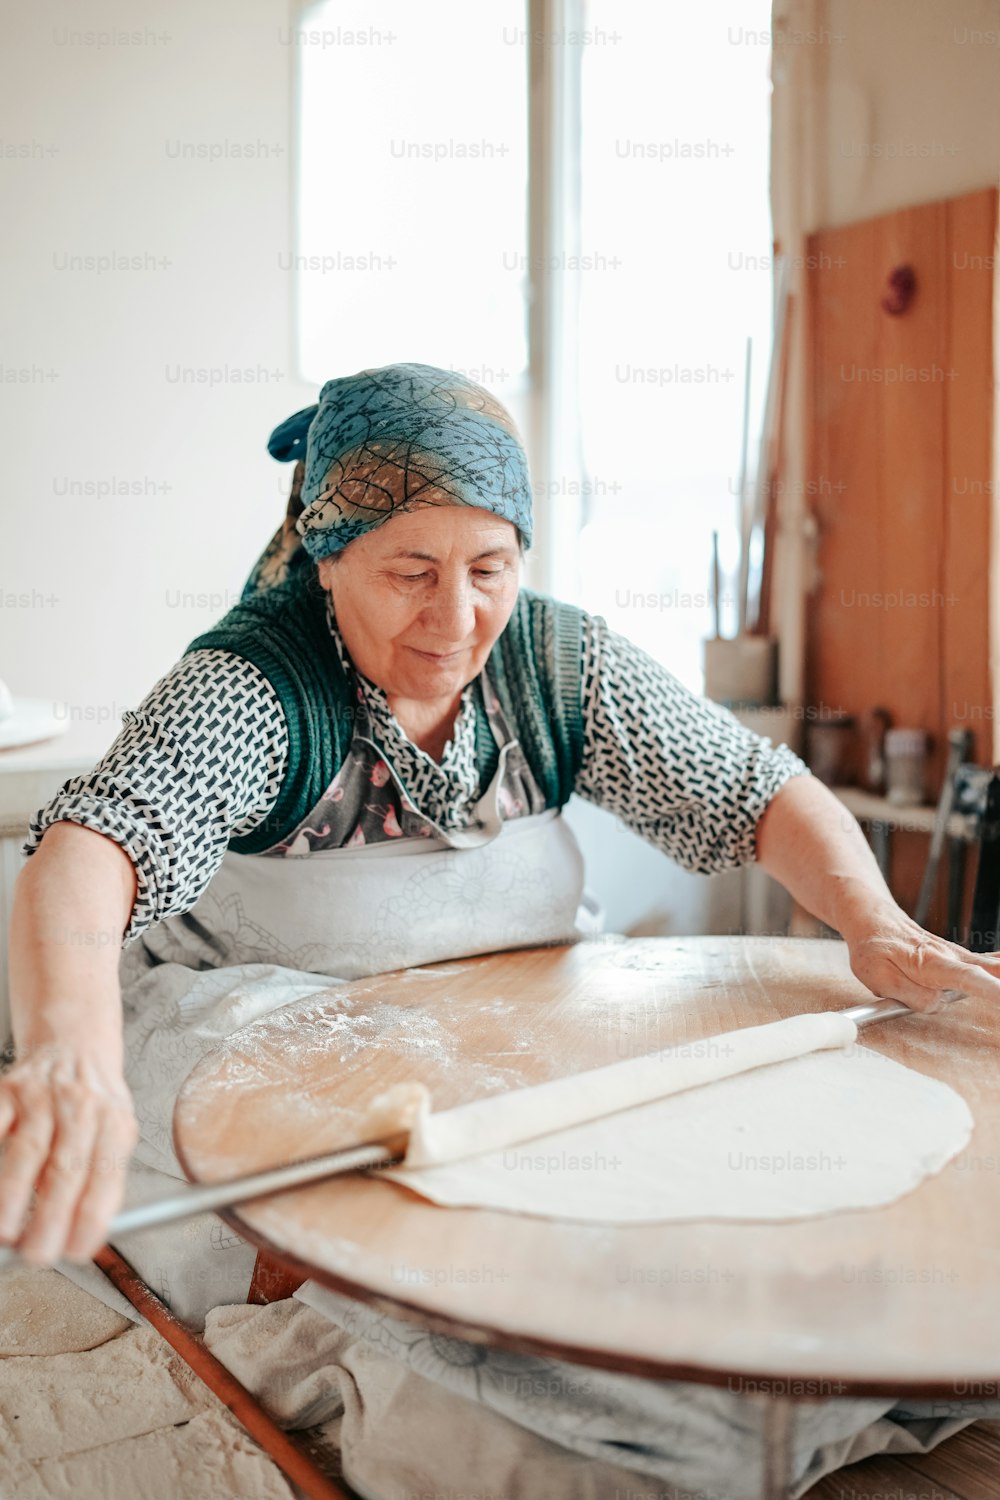 Eine Frau backt Brot auf einem Tisch